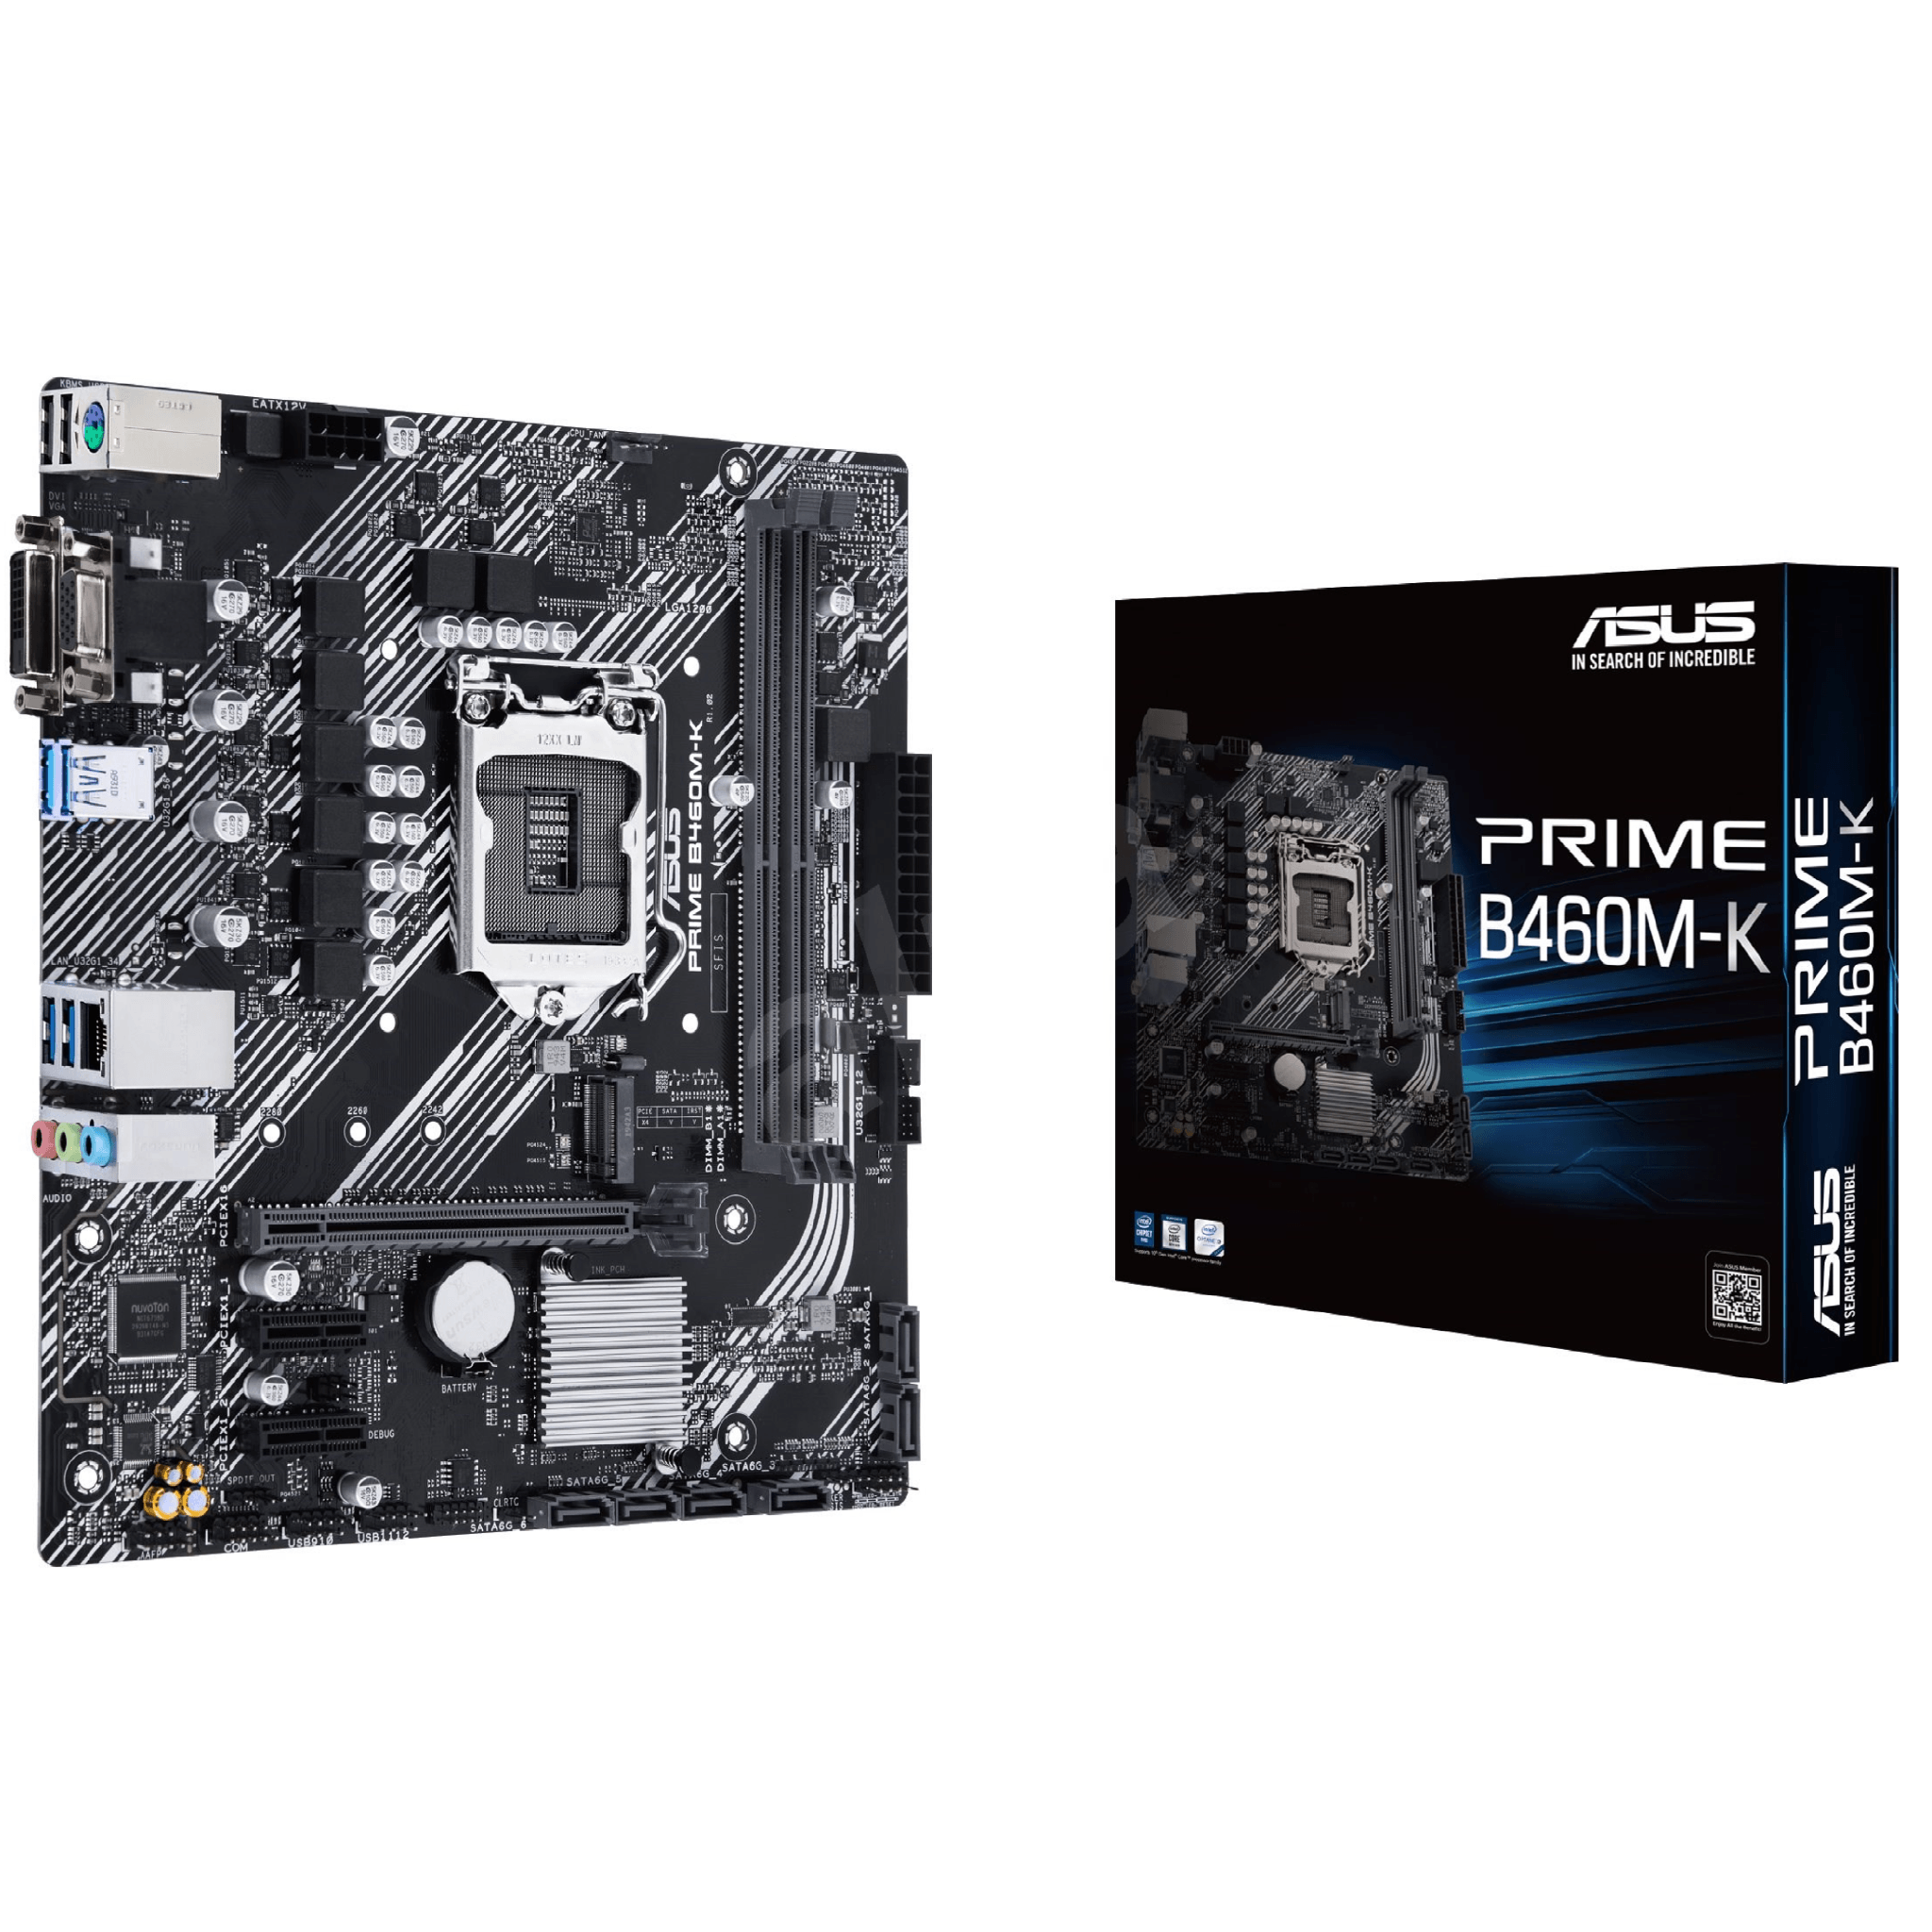 Asus Prime B460M-K Intel mATX Motherboard - Store 974 | ستور ٩٧٤